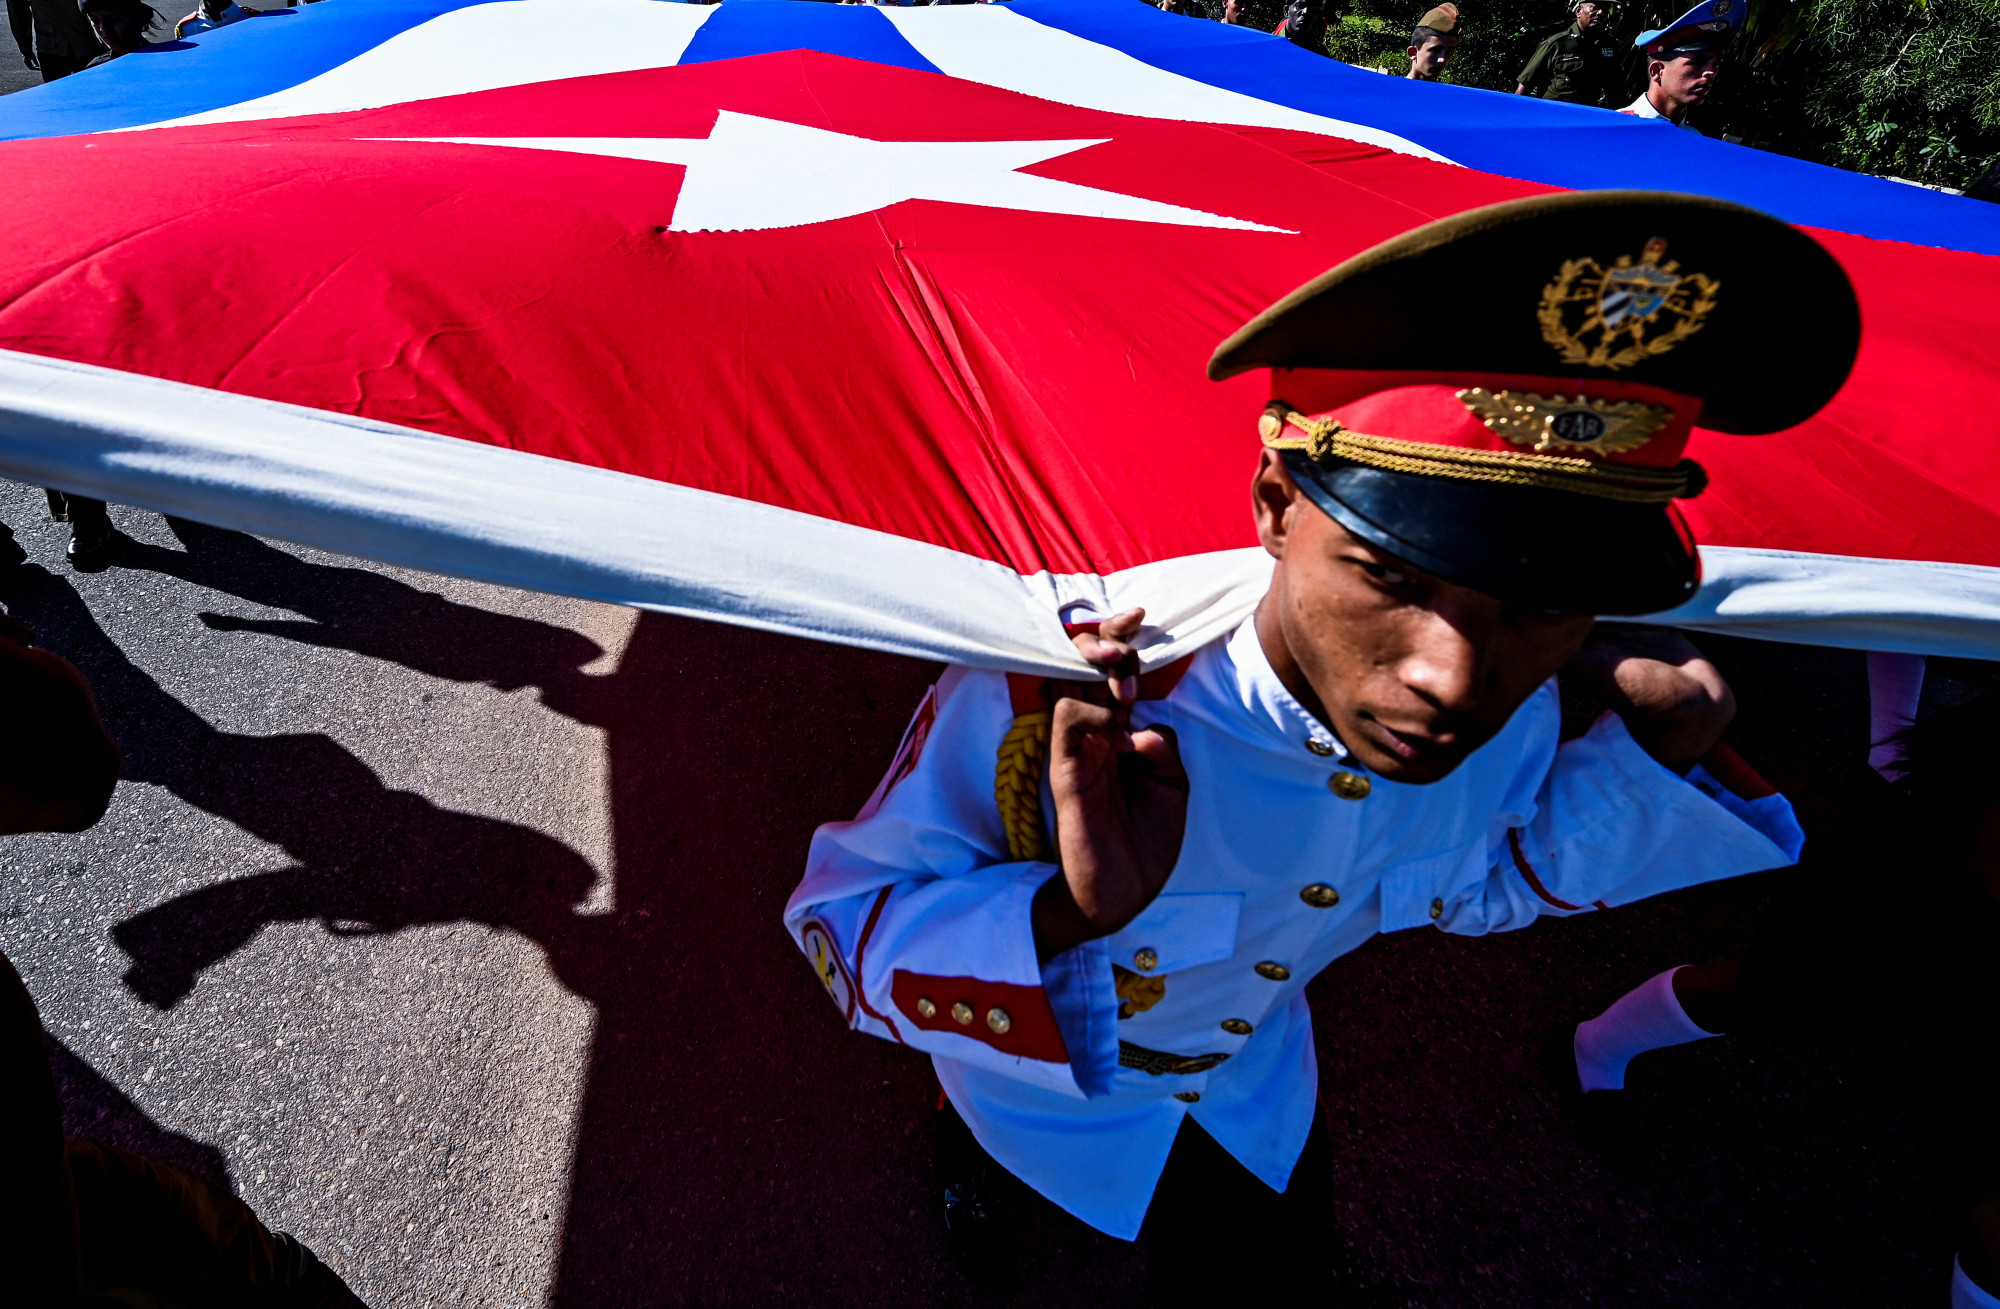 Kuba lecsapott a hálózatra, mely az orosz hadseregbe csábította a fiataljait